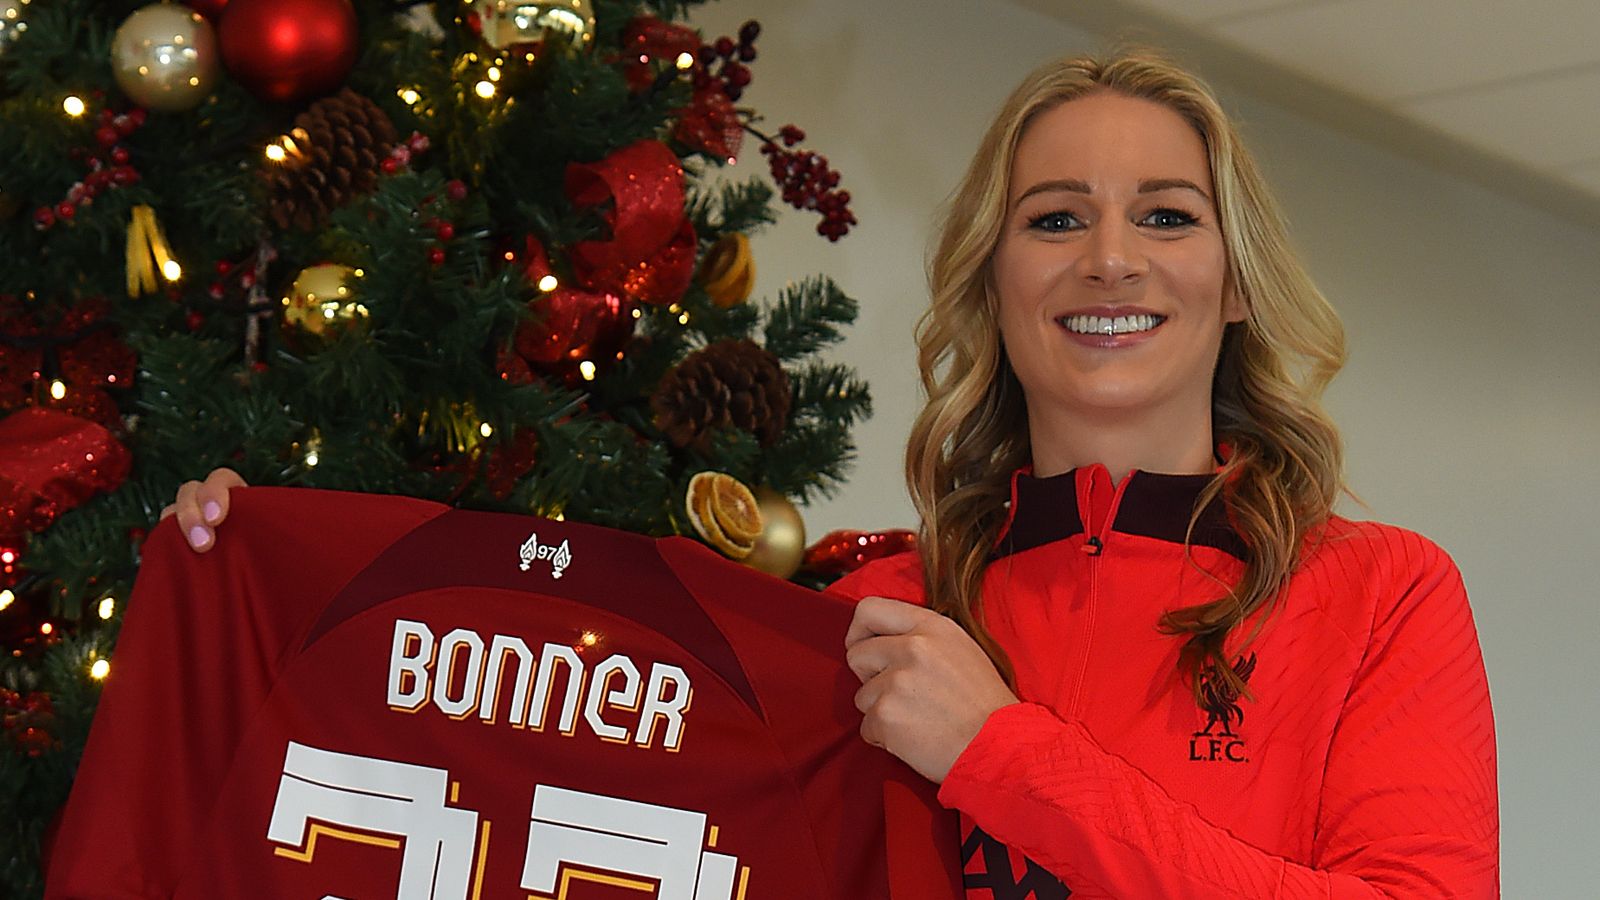 Gemma Bonner: Liverpool re-signe le capitaine de l’équipe vainqueur du titre de Premier League féminine la veille de Noël |  nouvelles du football